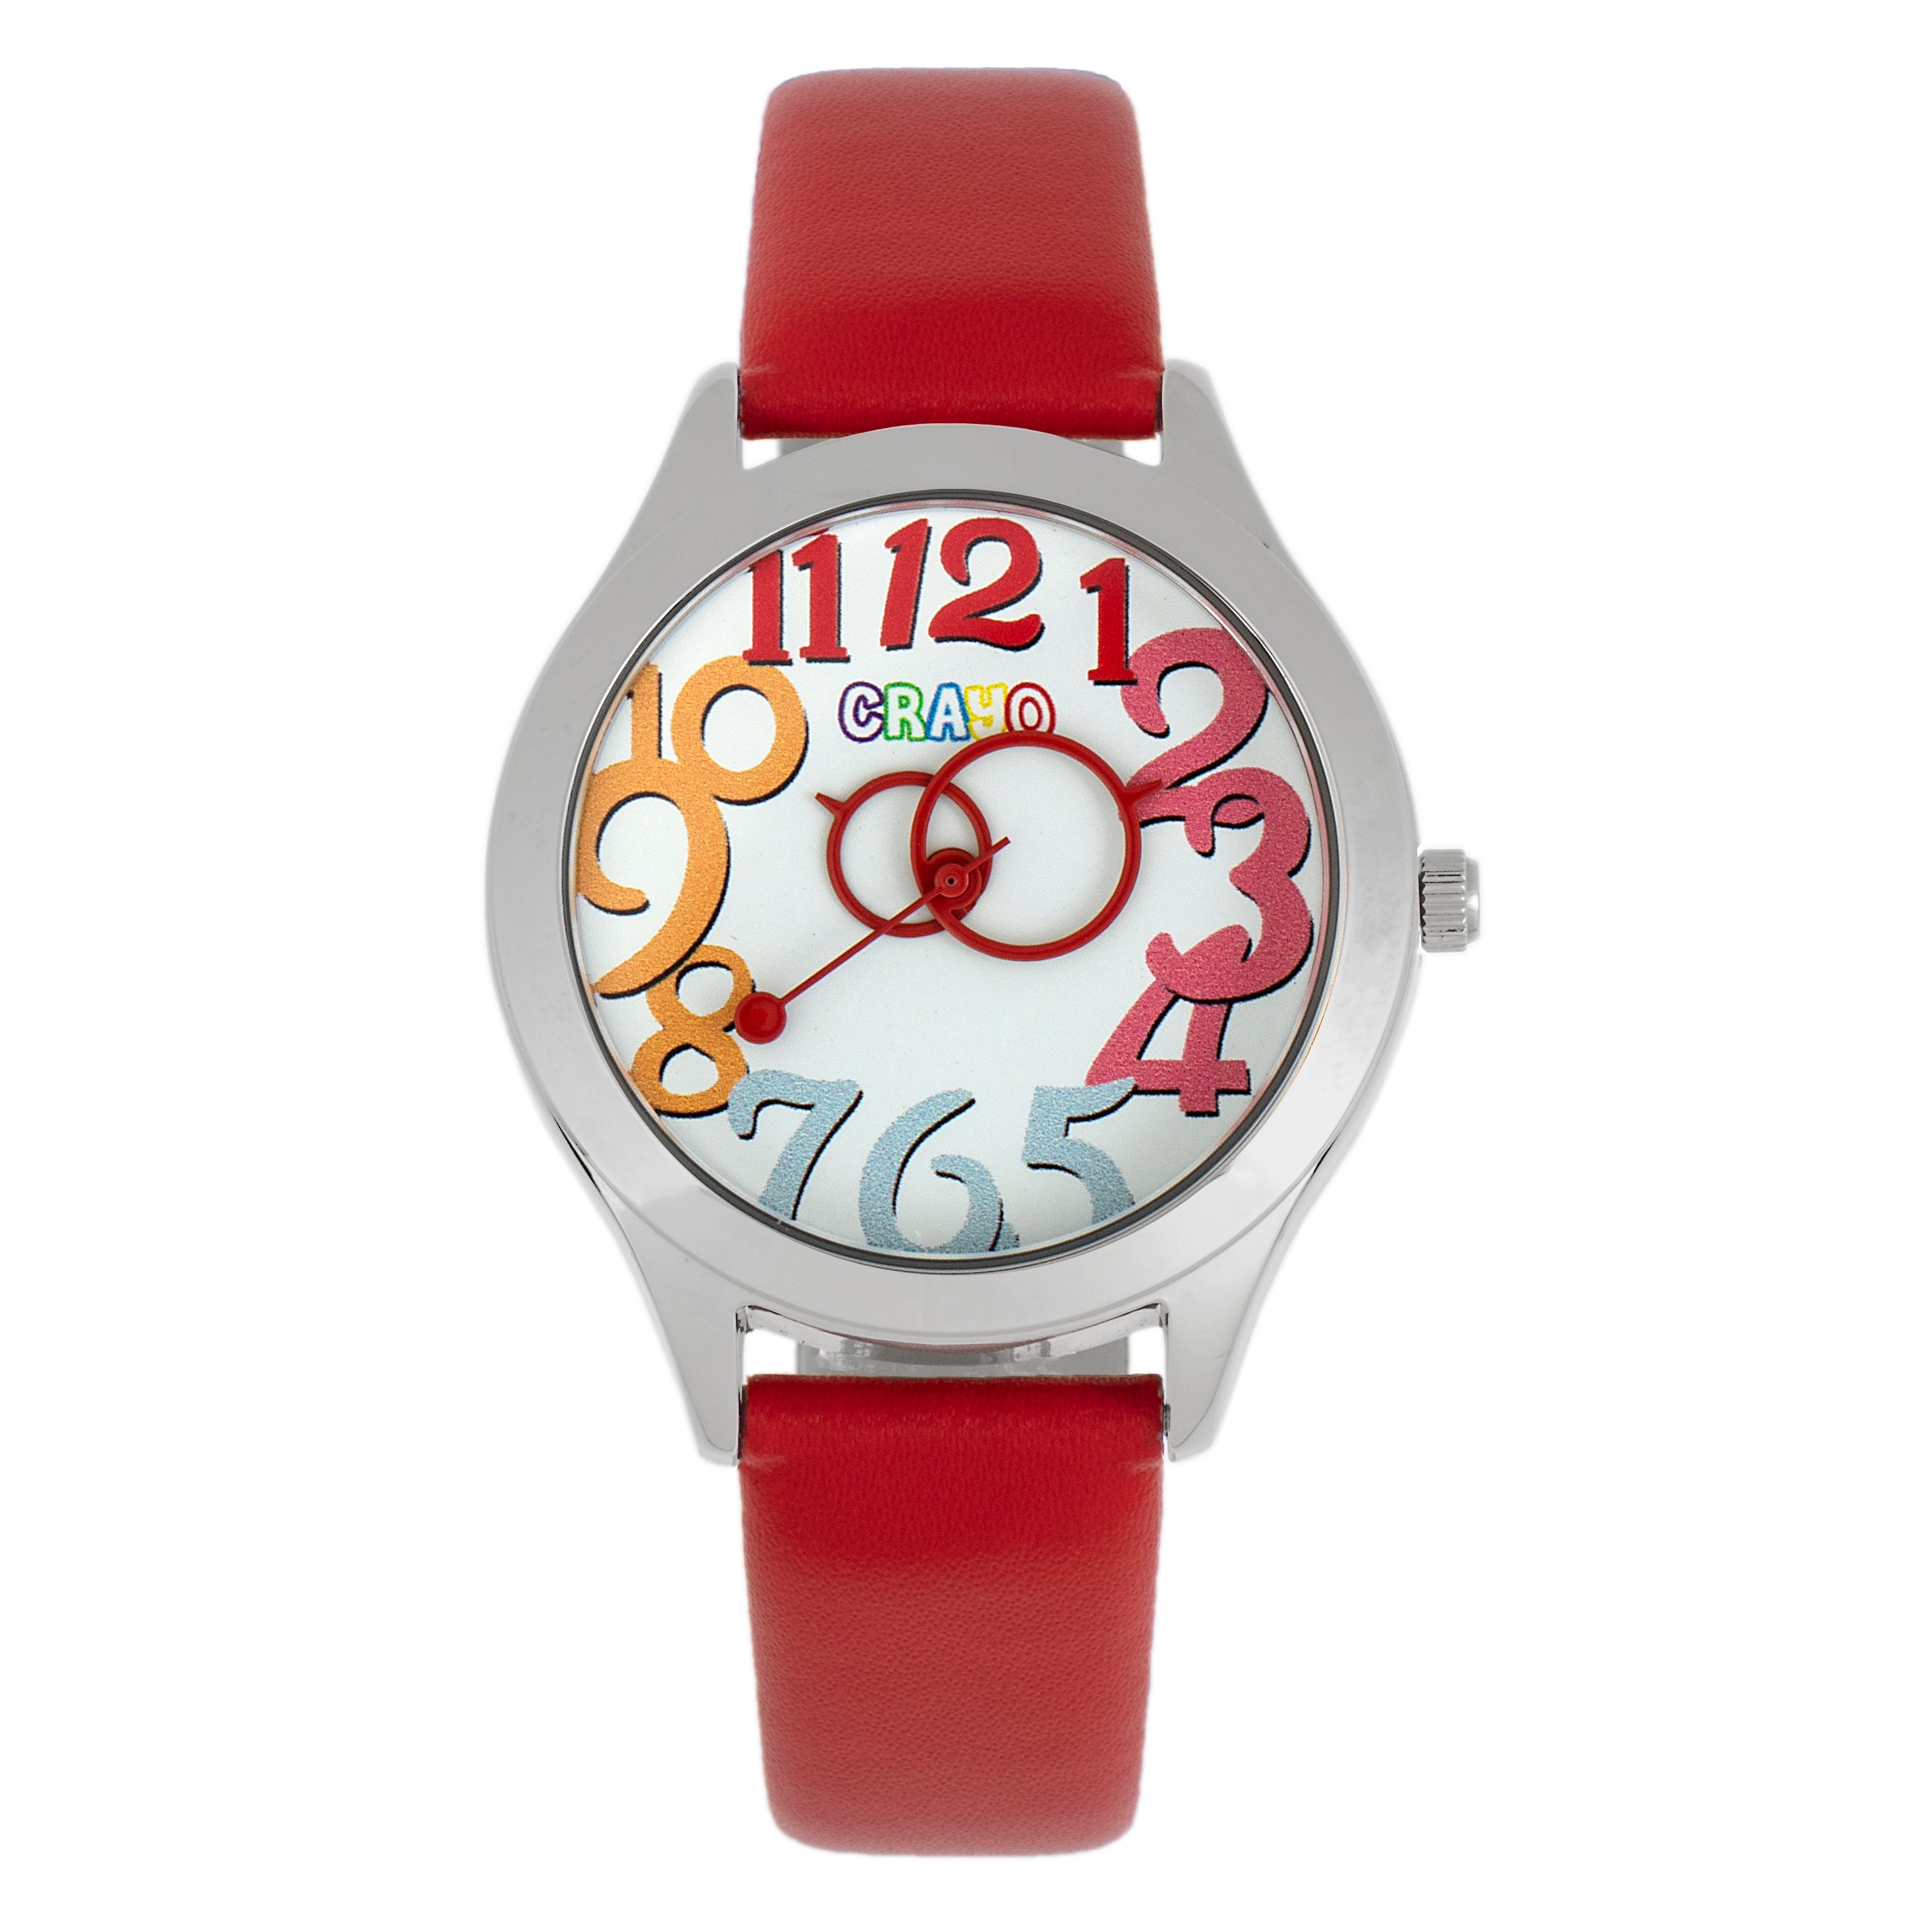 Crayo Spirit Unisex Watch - Red - CRACR5502